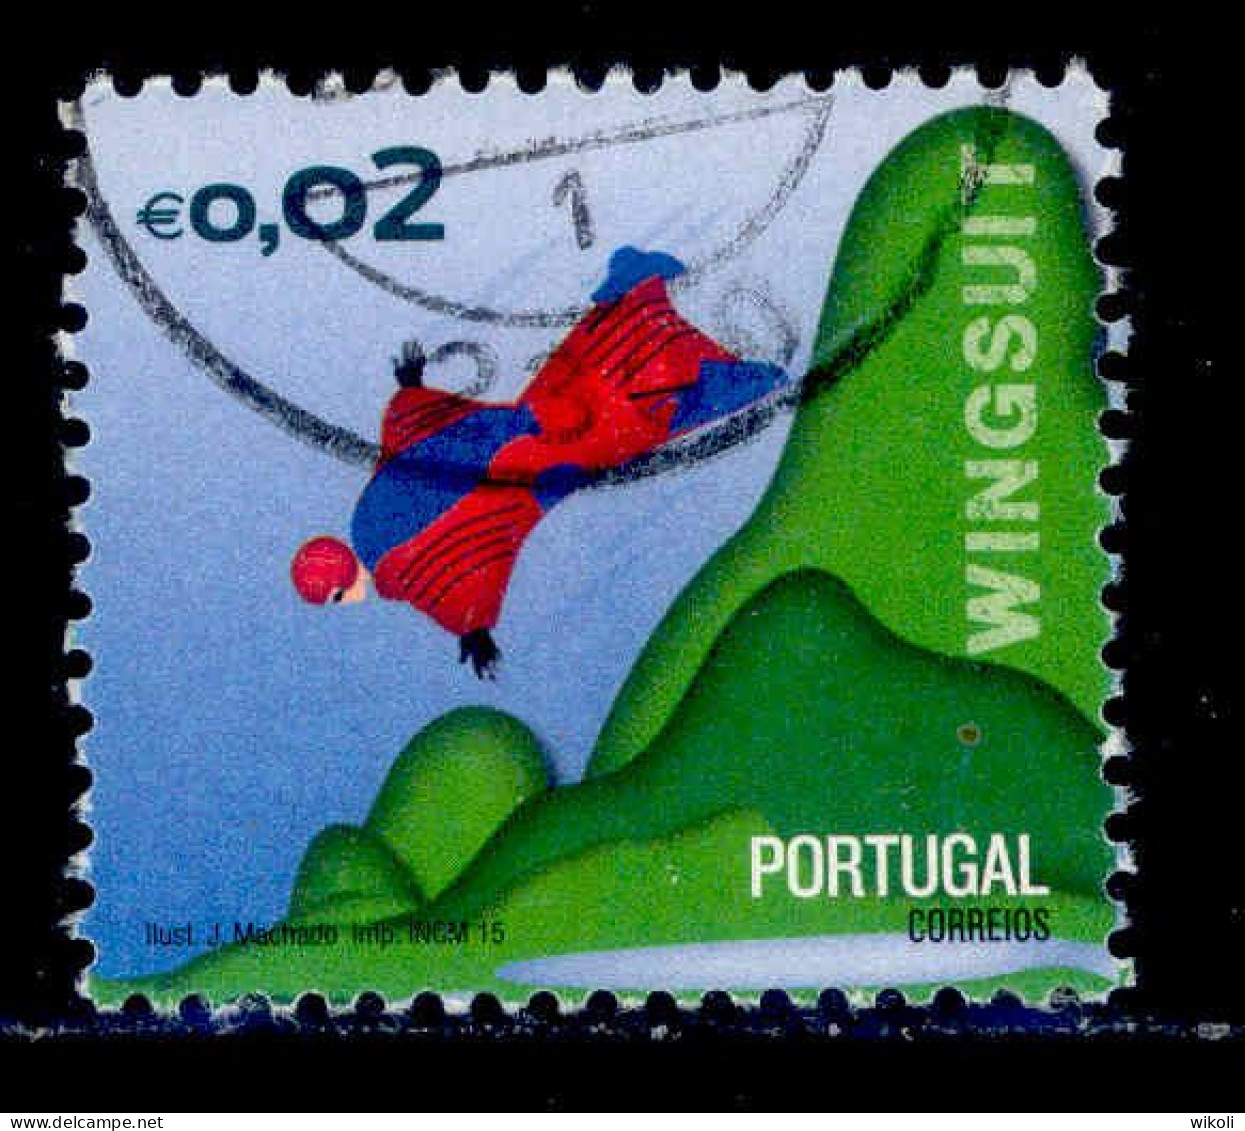 ! ! Portugal - 2015 Sports - Af. 4551 - Used - Oblitérés